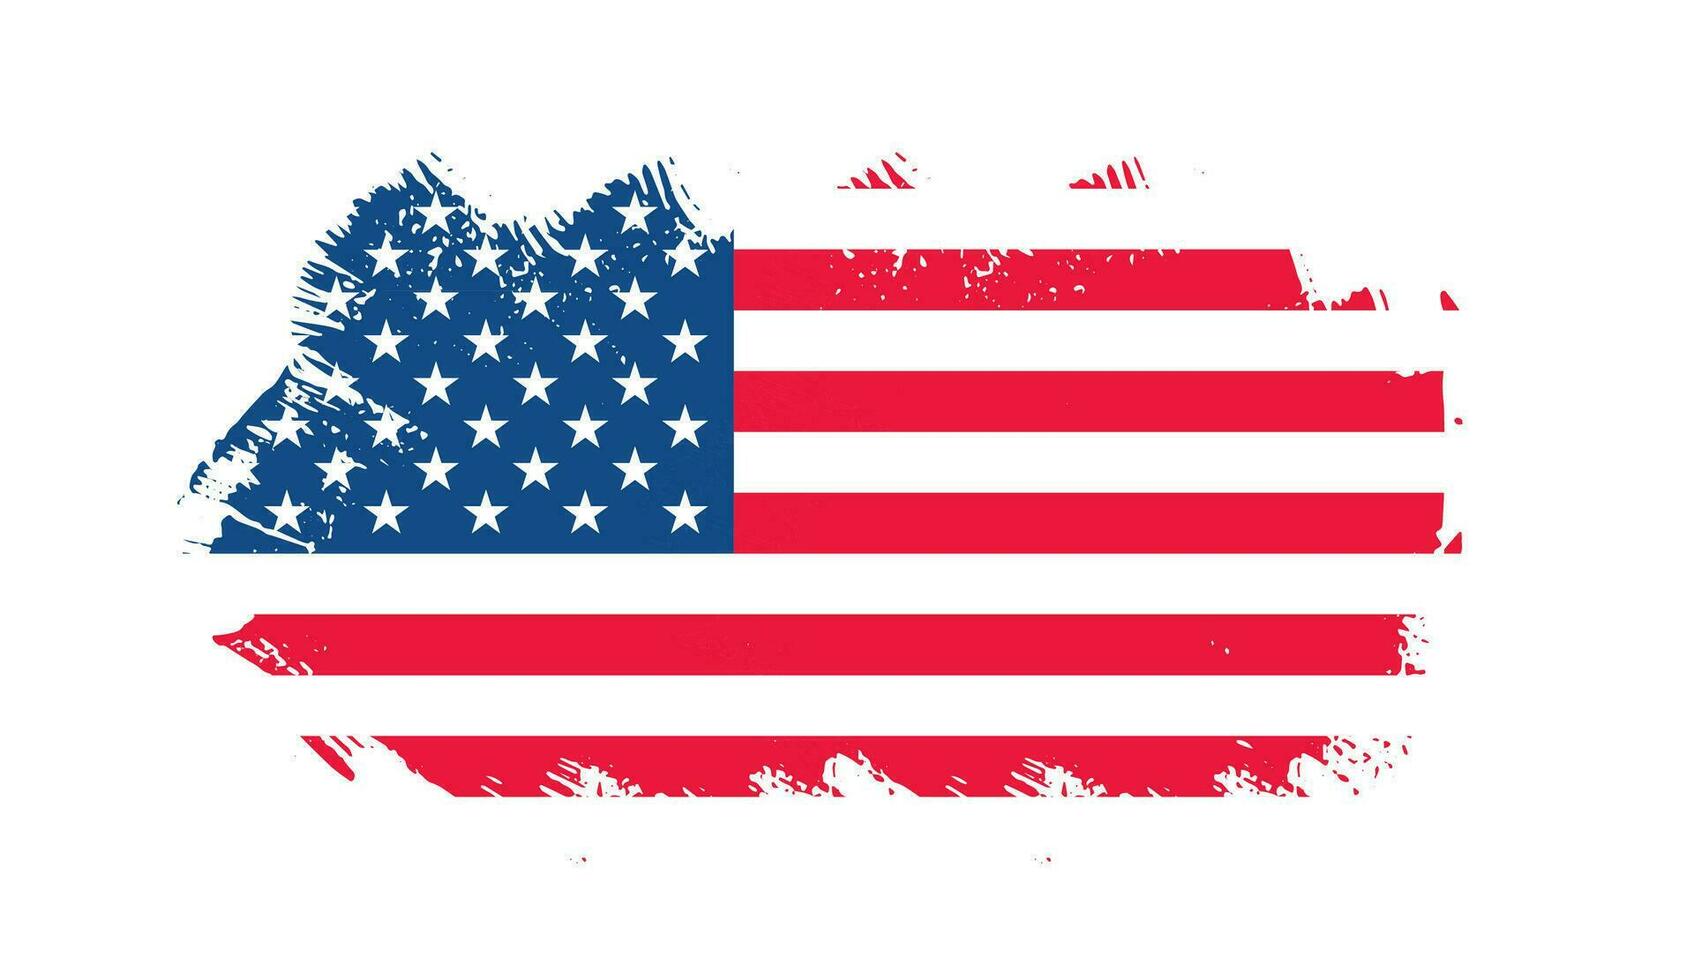 grunge ons vlag borstel beroerte effect. Verenigde Staten van Amerika vlag borstel verf gebruik naar 4 van juli Amerikaans president dag. Verenigde staten van Amerika vlag met waterverf verf borstel beroertes structuur of grunge structuur ontwerp. vector